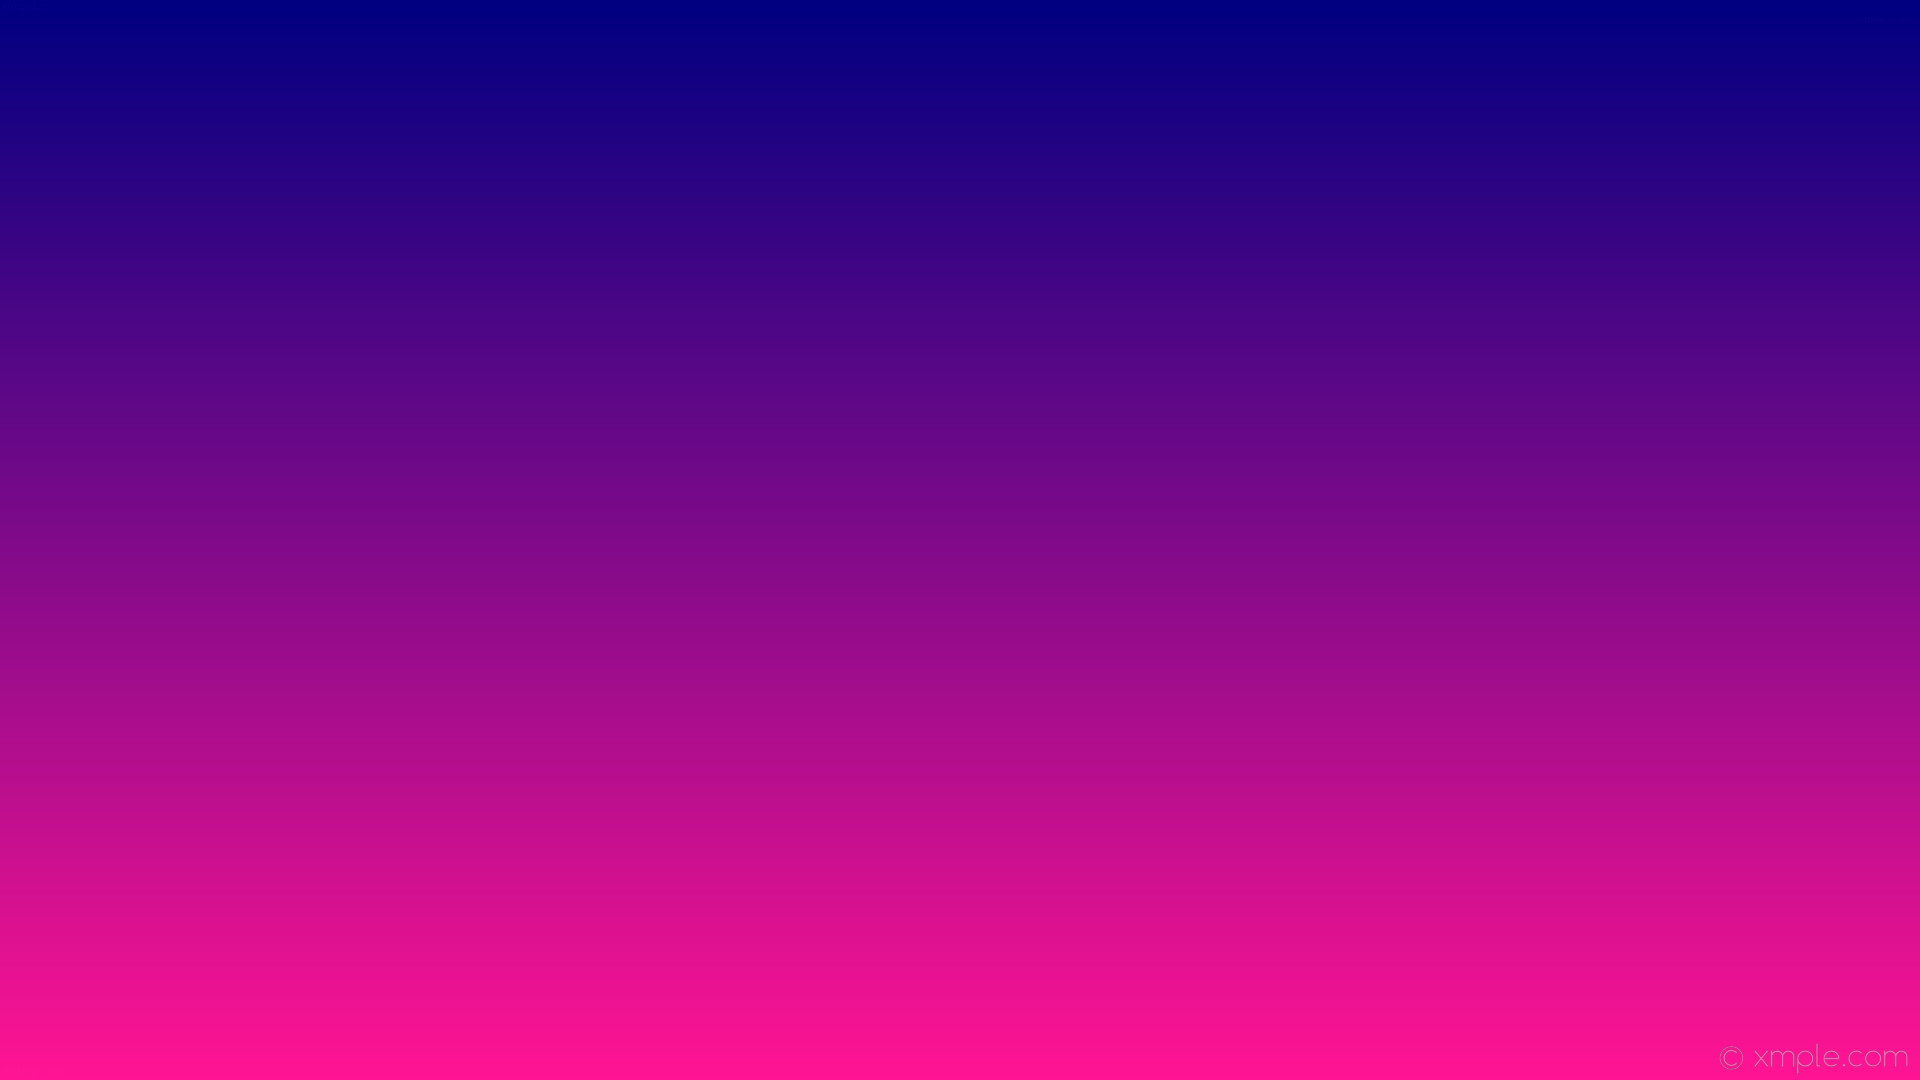 1920x1080 wallpaper blue pink gradient linear navy deep pink #000080 #ff1493 90Â°